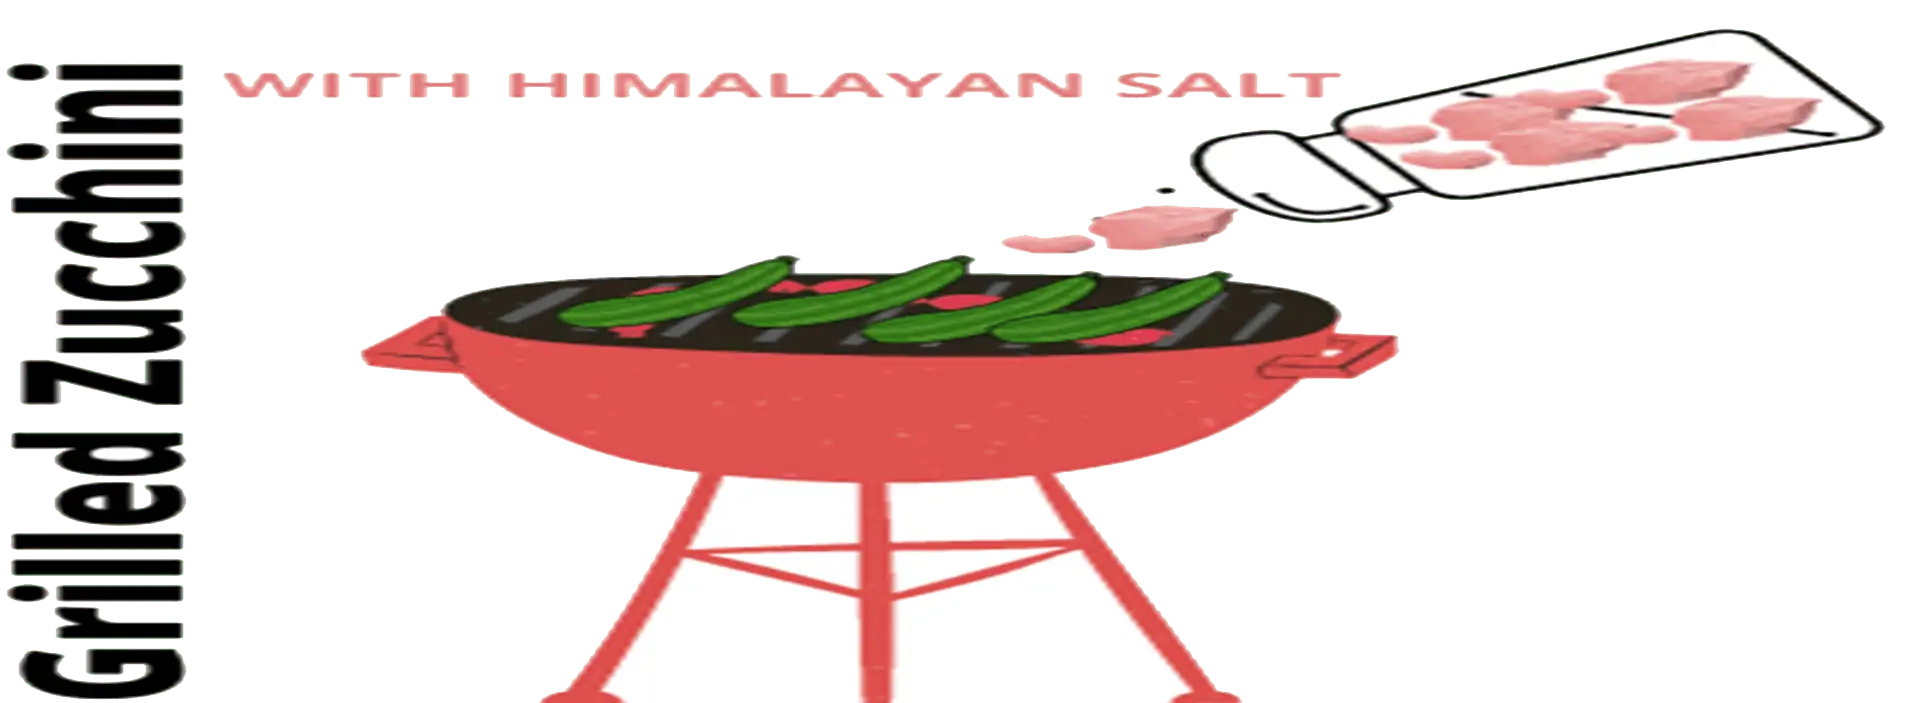 himalayan salt block recipes steak himalayan salt block fish recipes himalayan salt block recipes shrimp himalayan salt block recipes scallops